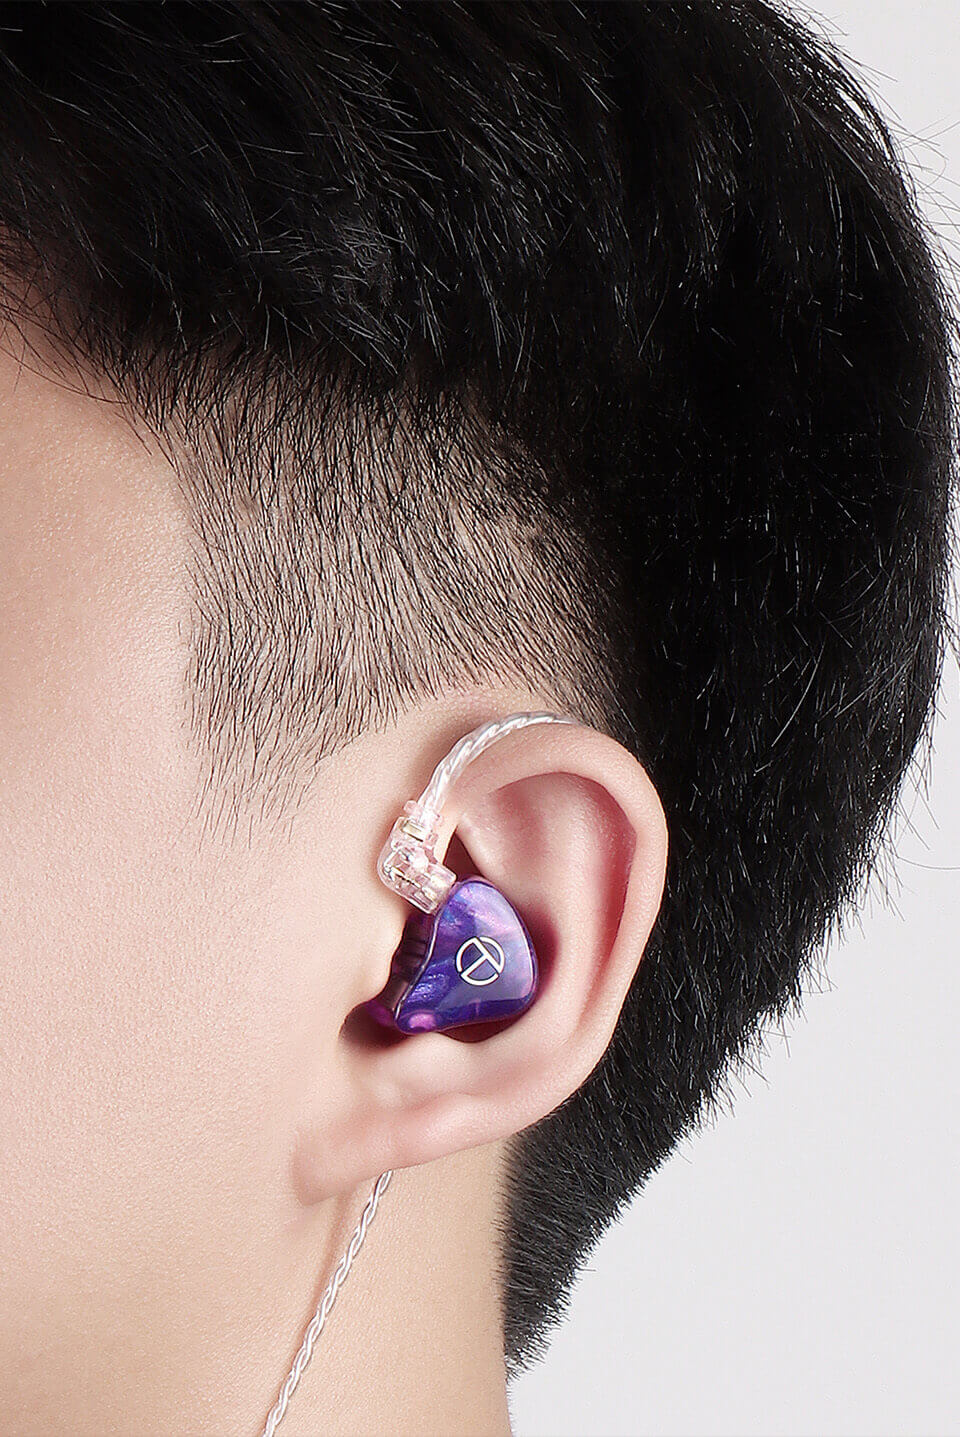 TRN X7 in a man's ear